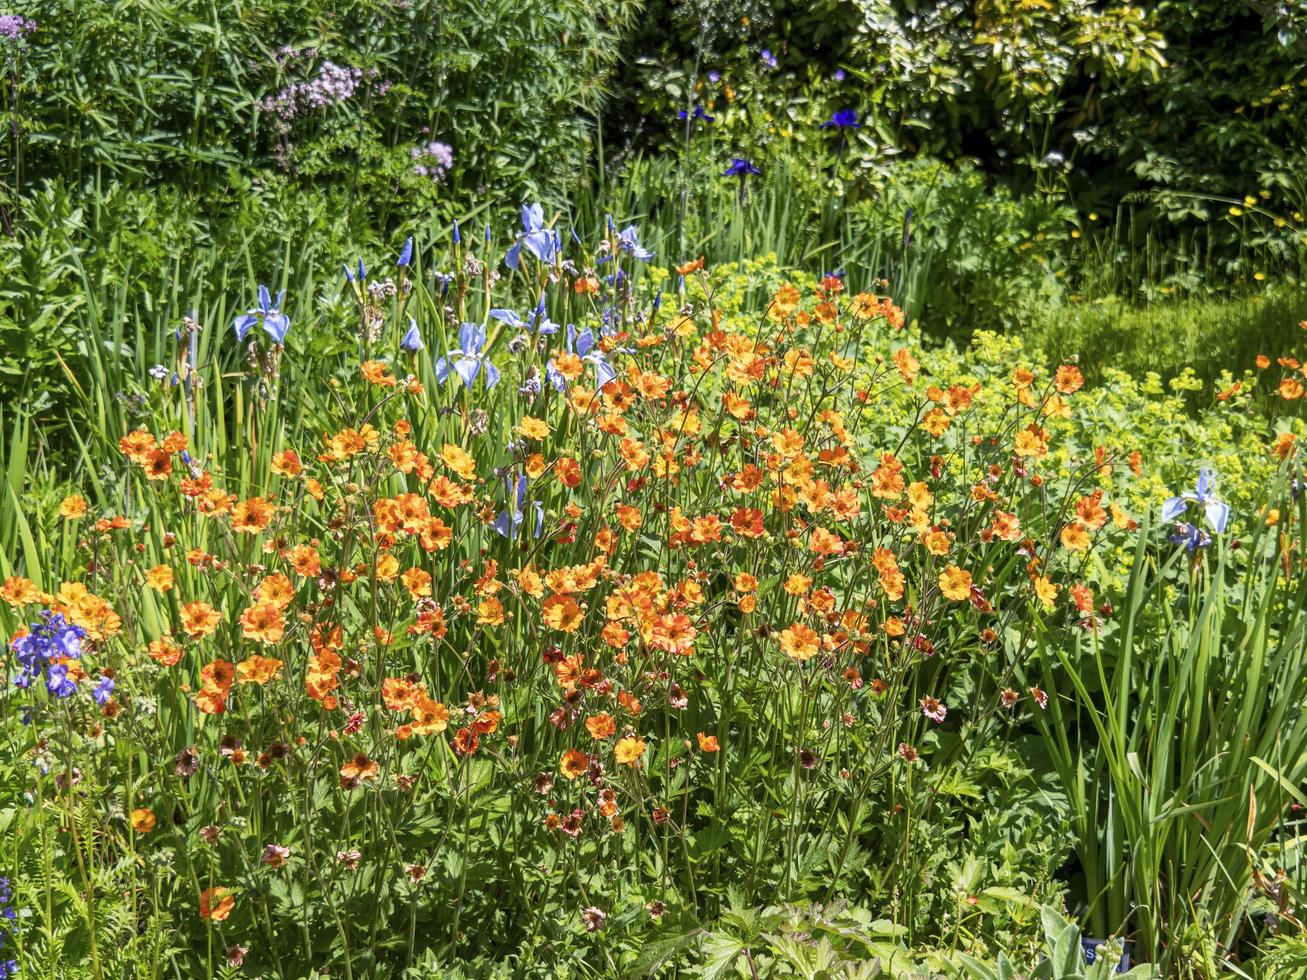 geums oranges et iris bleus dans un jardin photo